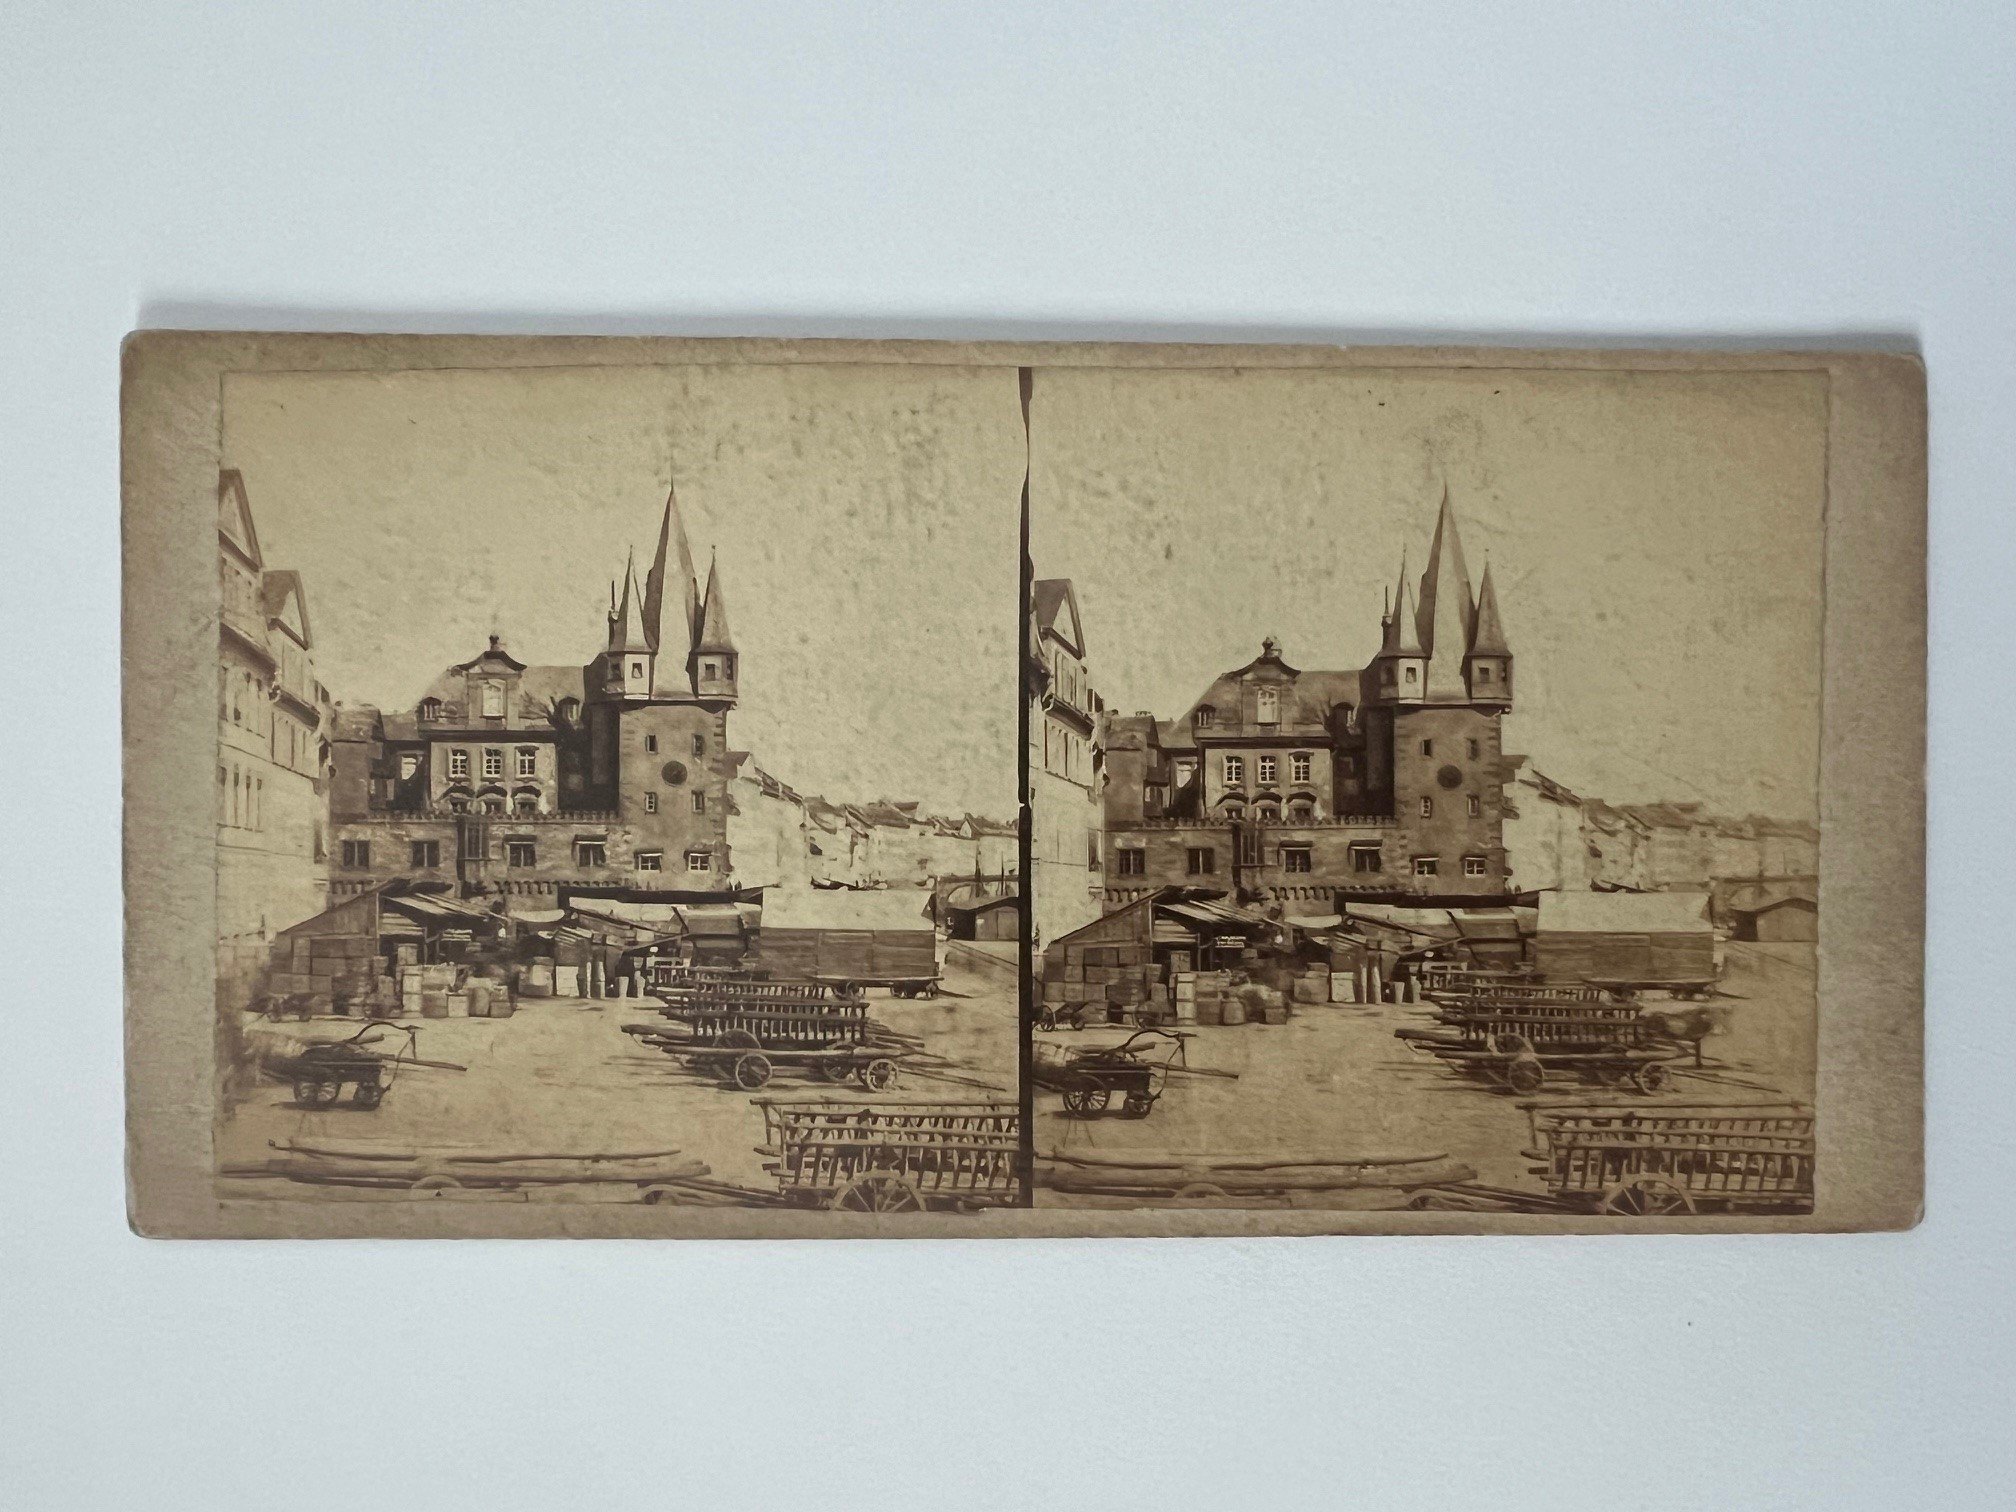 Stereobild, Unbekannter Fotograf, Frankfurt, Rententurm, ca. 1864. (Taunus-Rhein-Main - Regionalgeschichtliche Sammlung Dr. Stefan Naas CC BY-NC-SA)